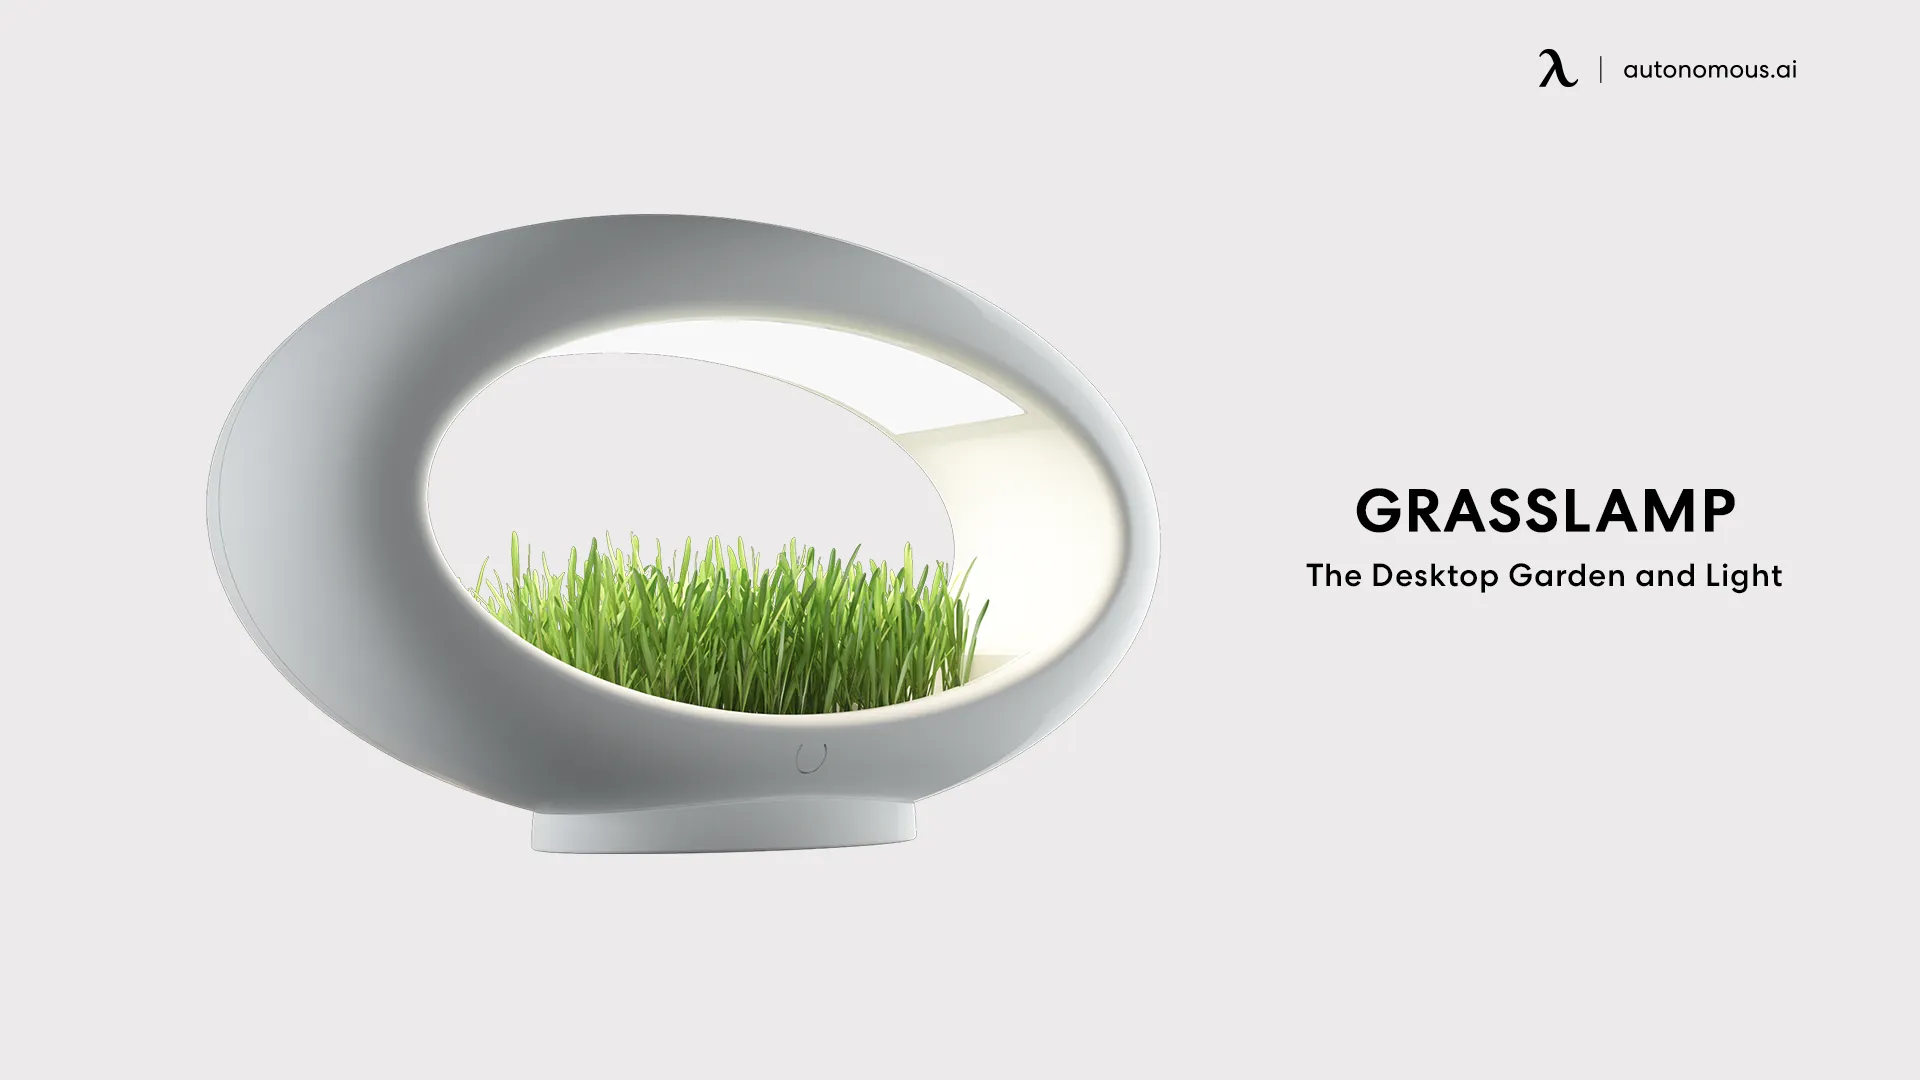 Grasslamp - The Desktop Garden and Light